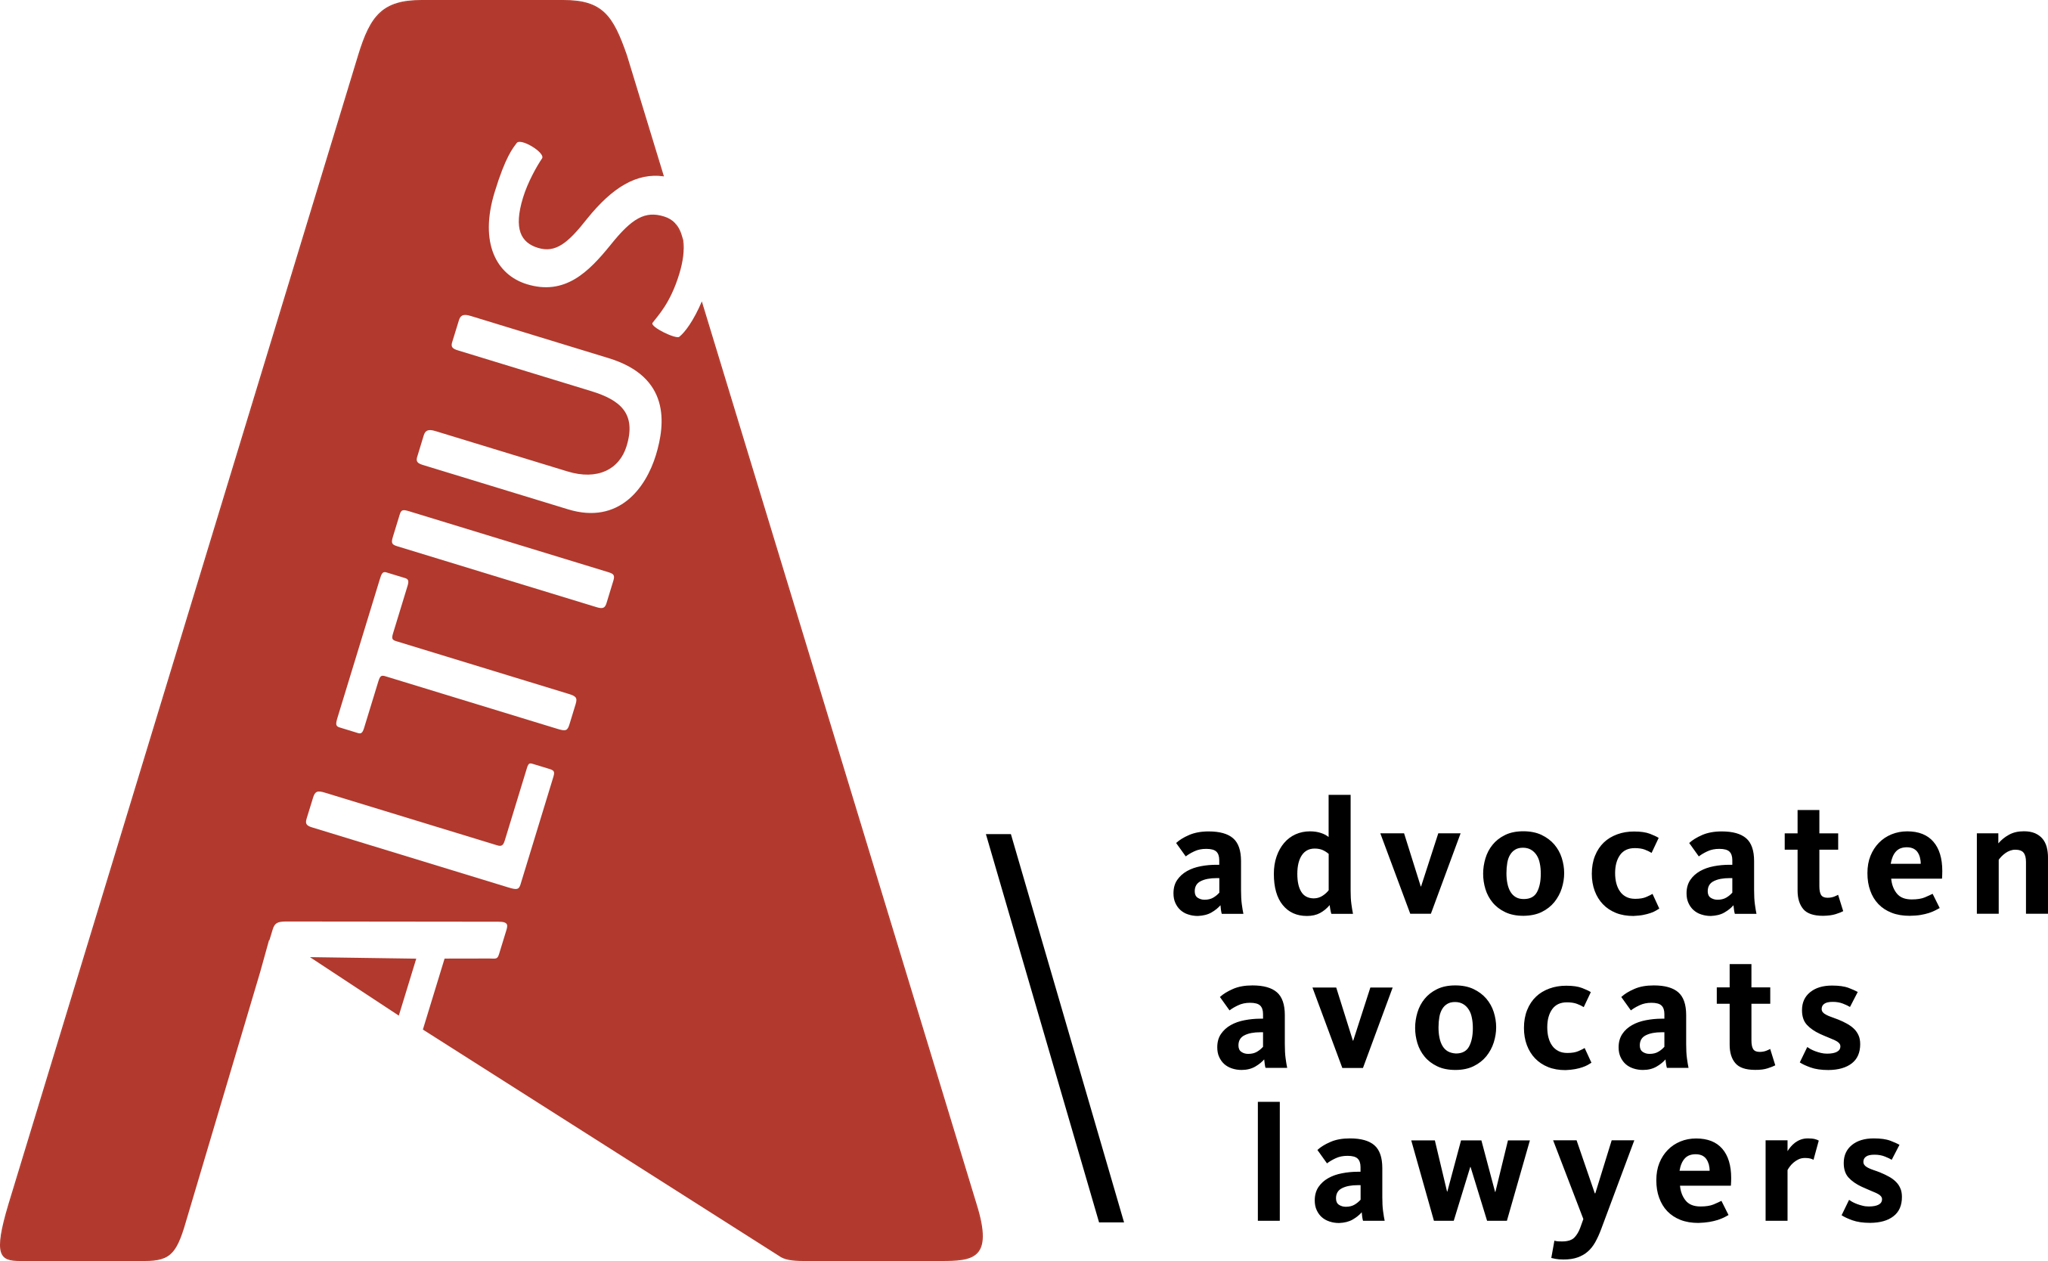 ALTIUS logo